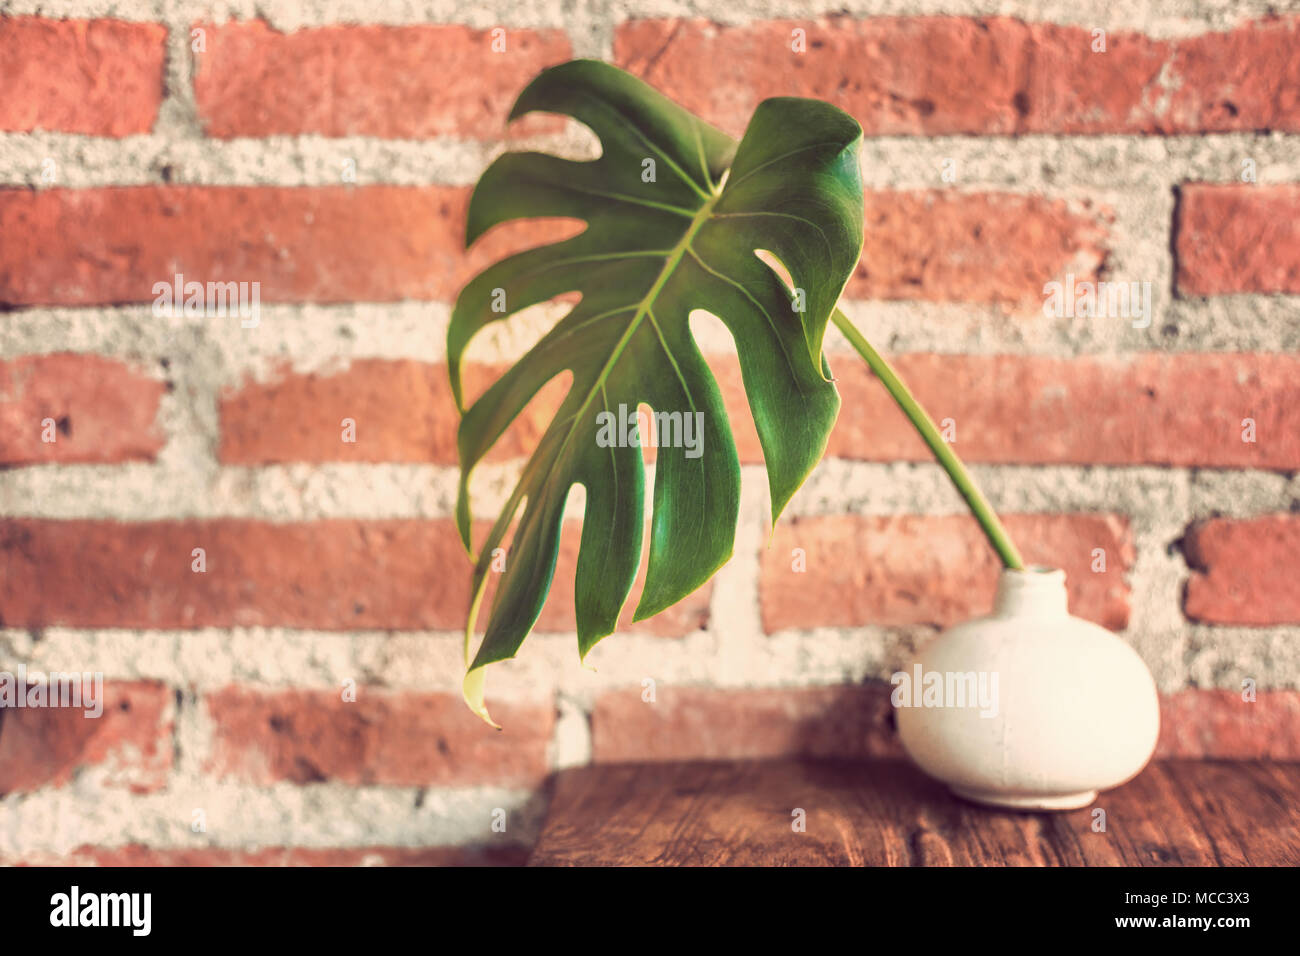 Grande feuille verte dans un petit vase blanc assis sur table en bois contre les murs de brique, vintage retro nuance de couleur, bonne backgroud pour ton thème de la terre Banque D'Images